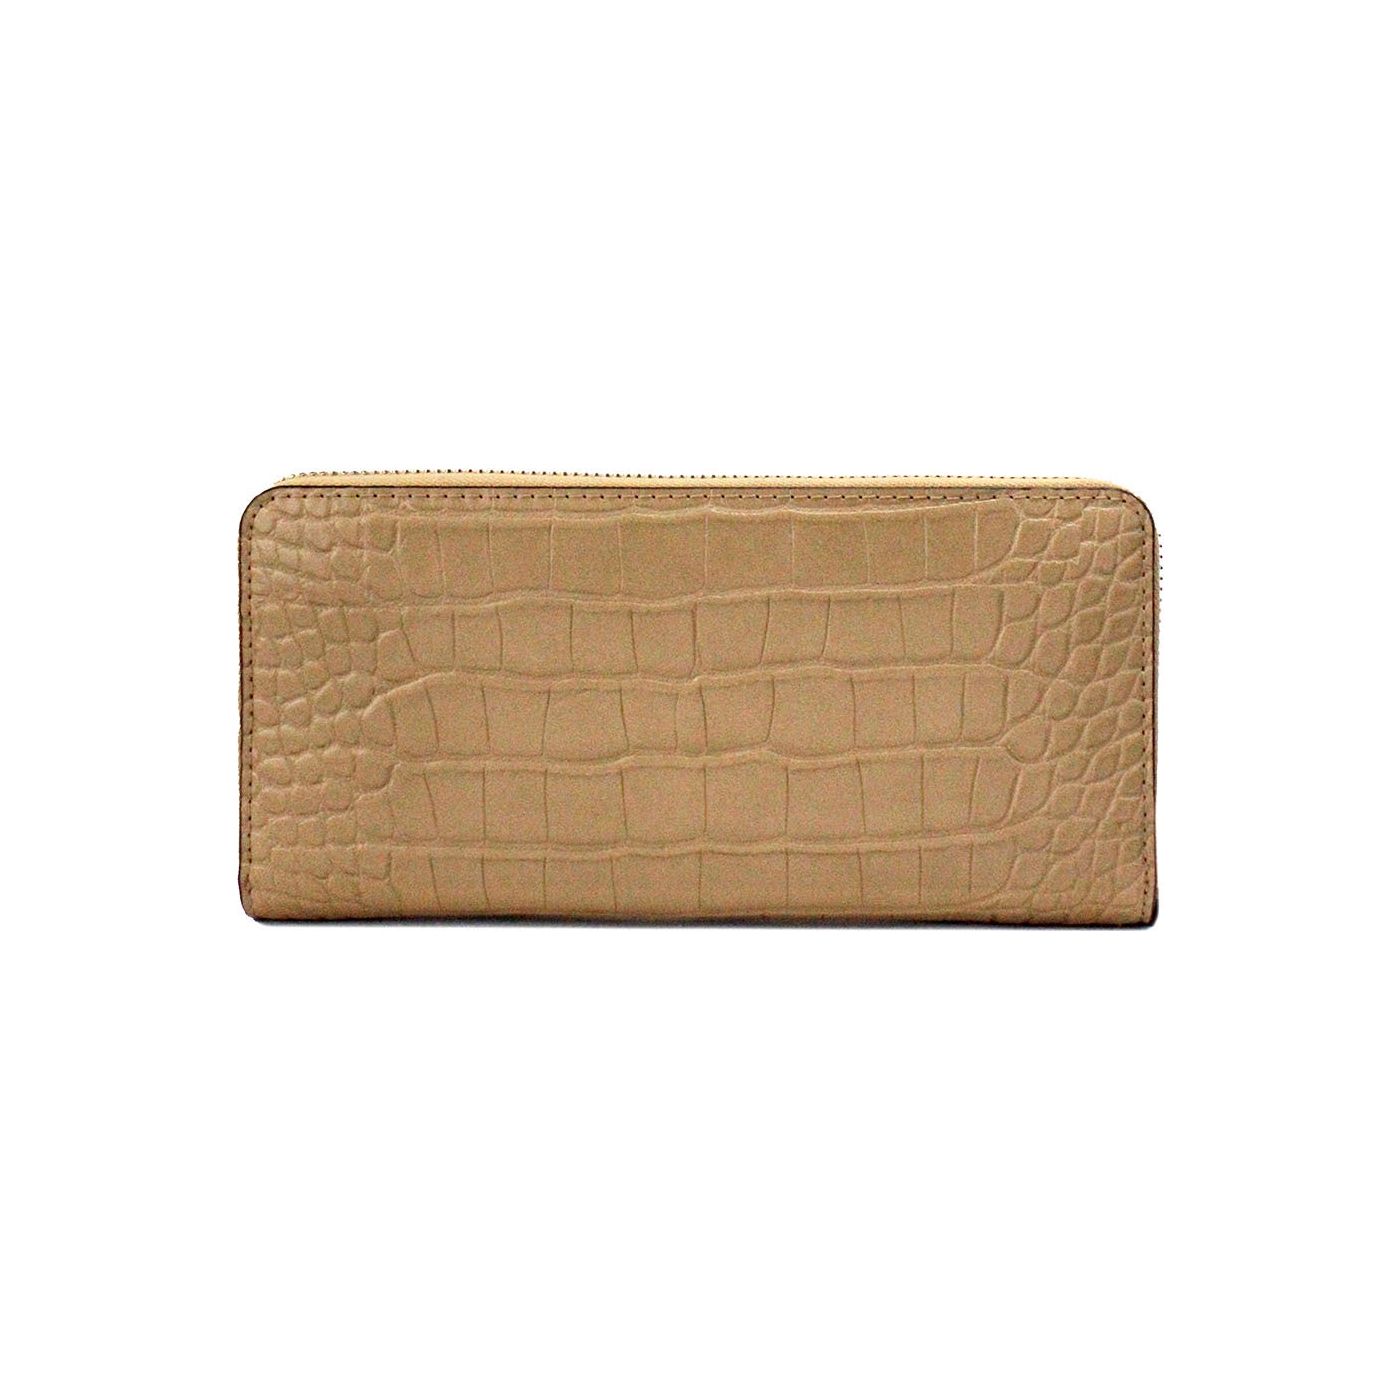 Michael Kors | Jet Set Large Camel Animal Print Leather Continental Wrist Wallet| McRichard Designer Brands   